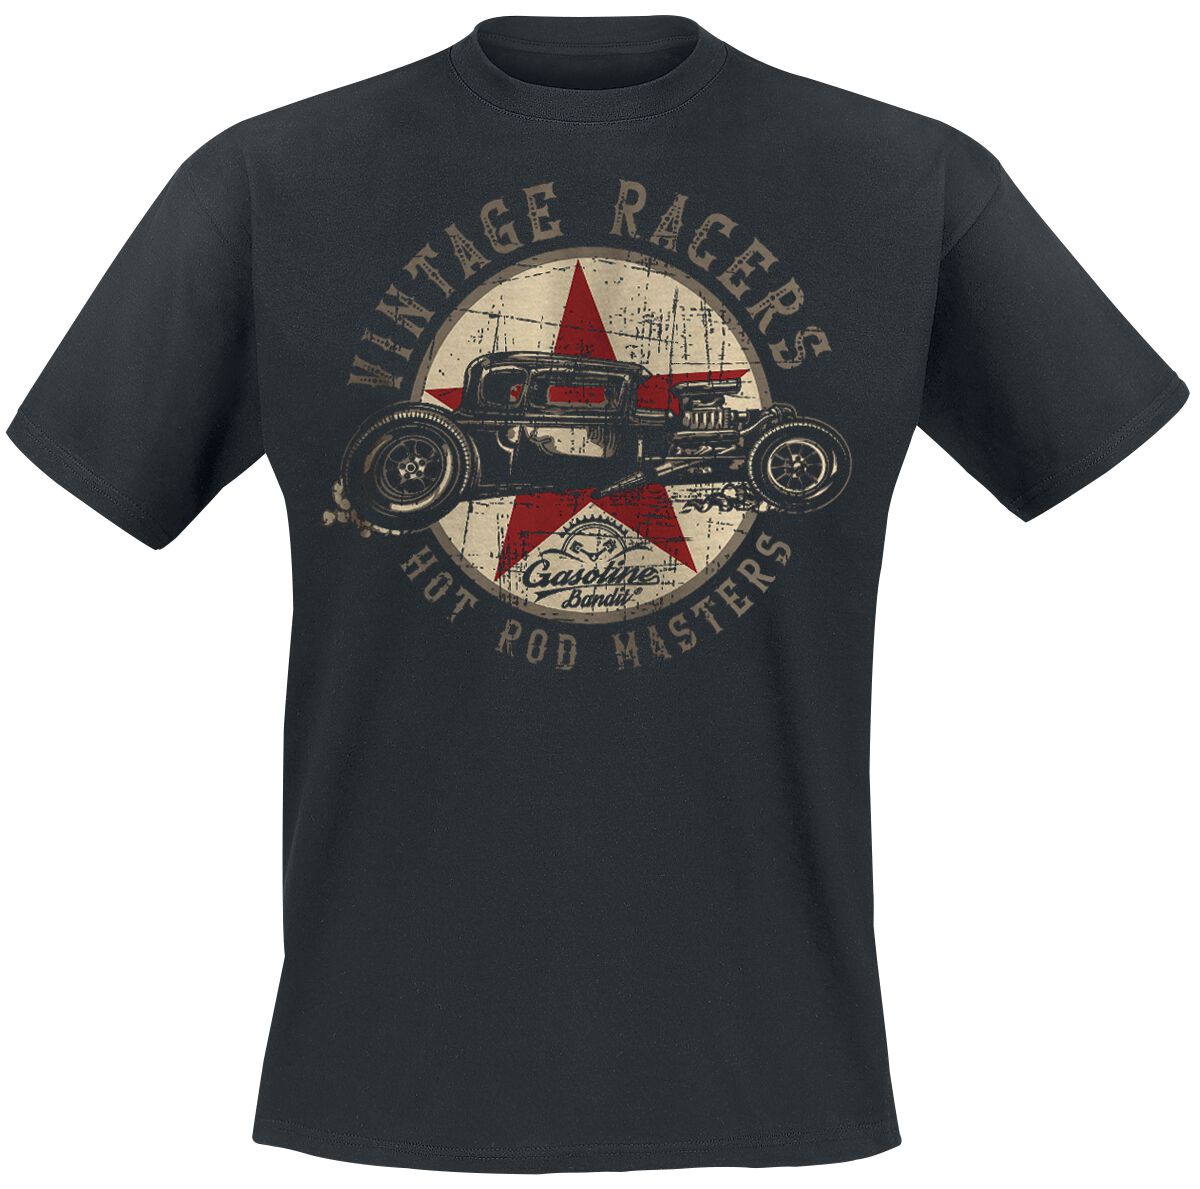 Gasoline Bandit - Rockabilly T-Shirt - Vintage Racers - S bis 3XL - für Männer - Größe M - schwarz